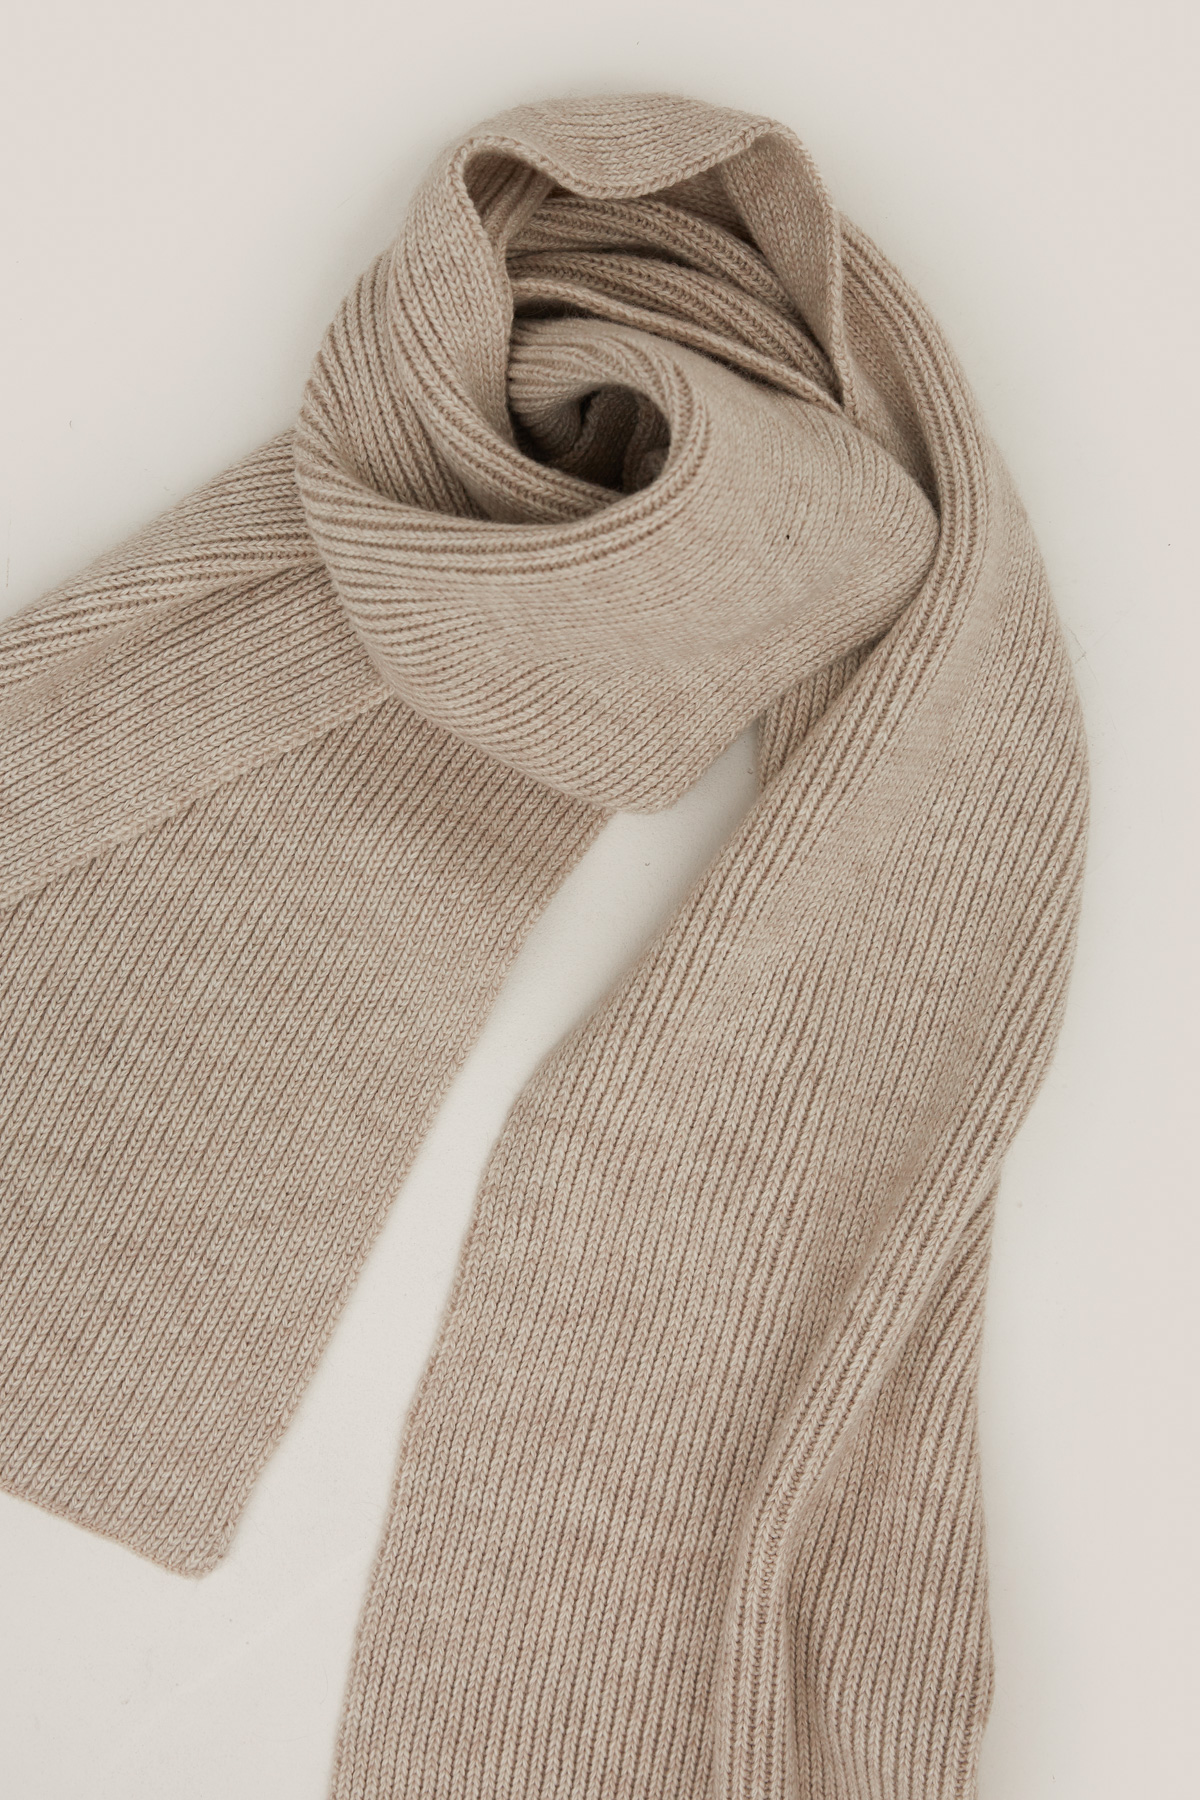 В'язаний шарф з вовни світло-бежевого кольору, фото 1